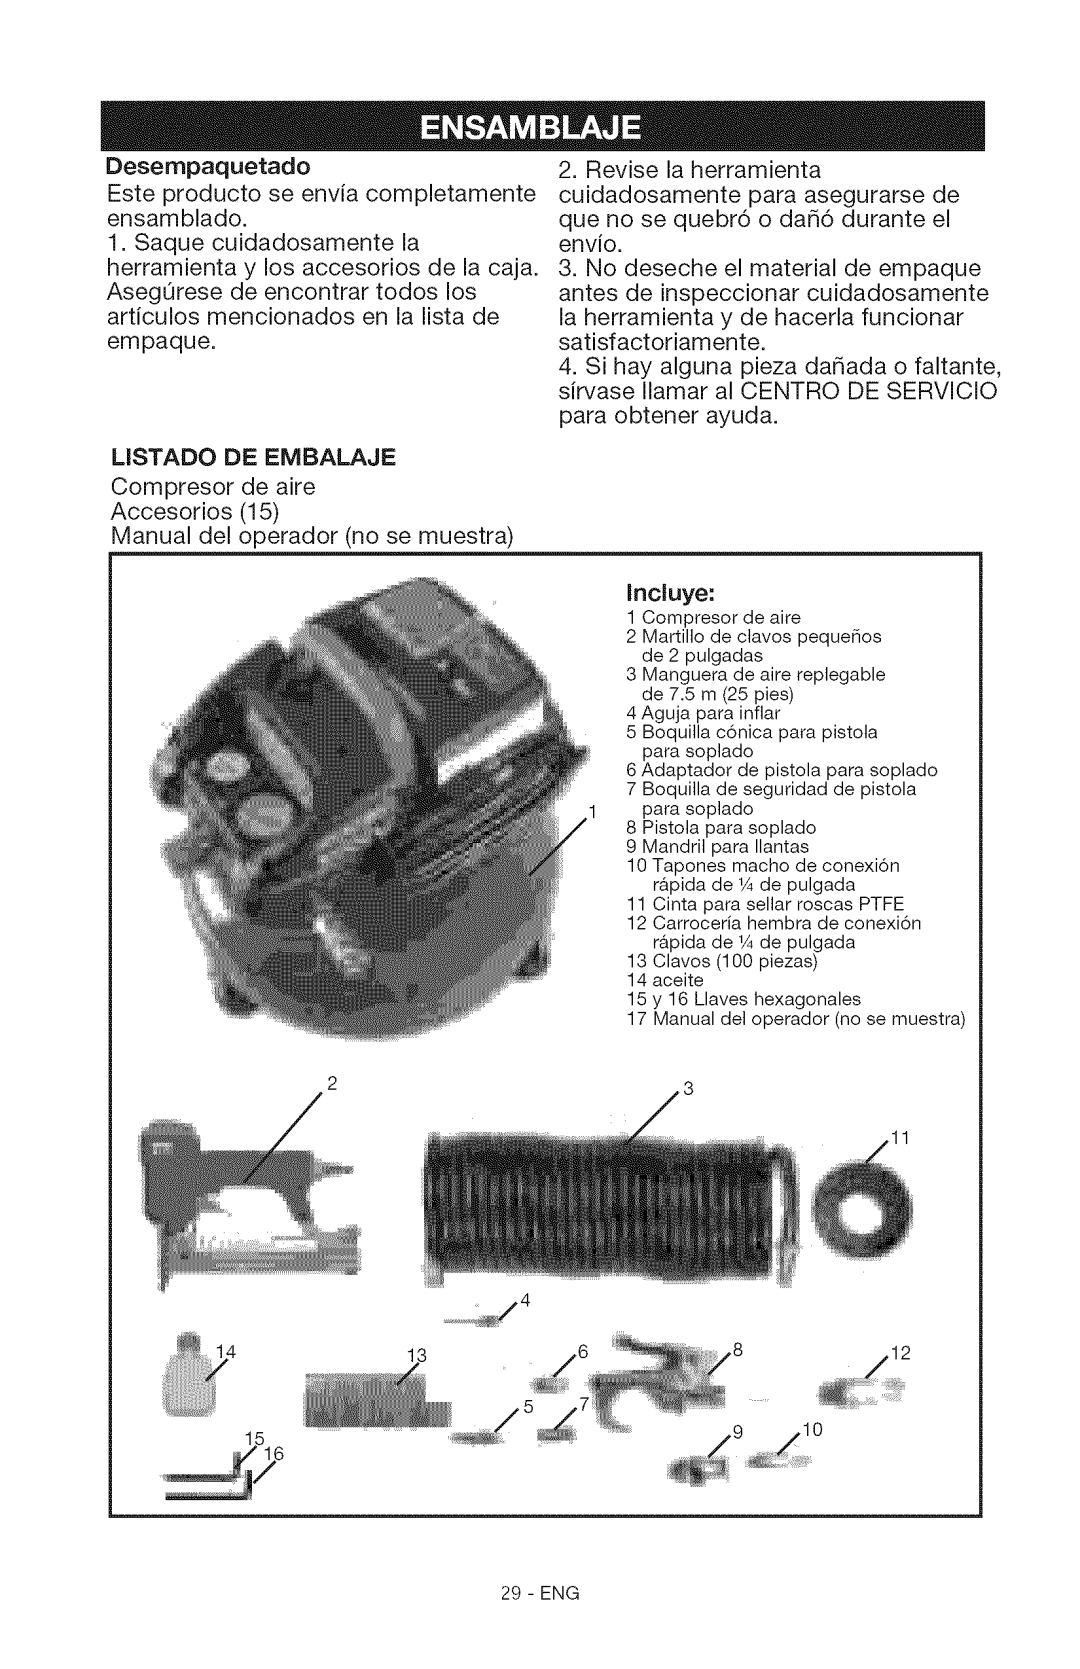 Craftsman 15206 manual Desempaquetado, LiSTADO DE EMBALAJE, Inciuye 